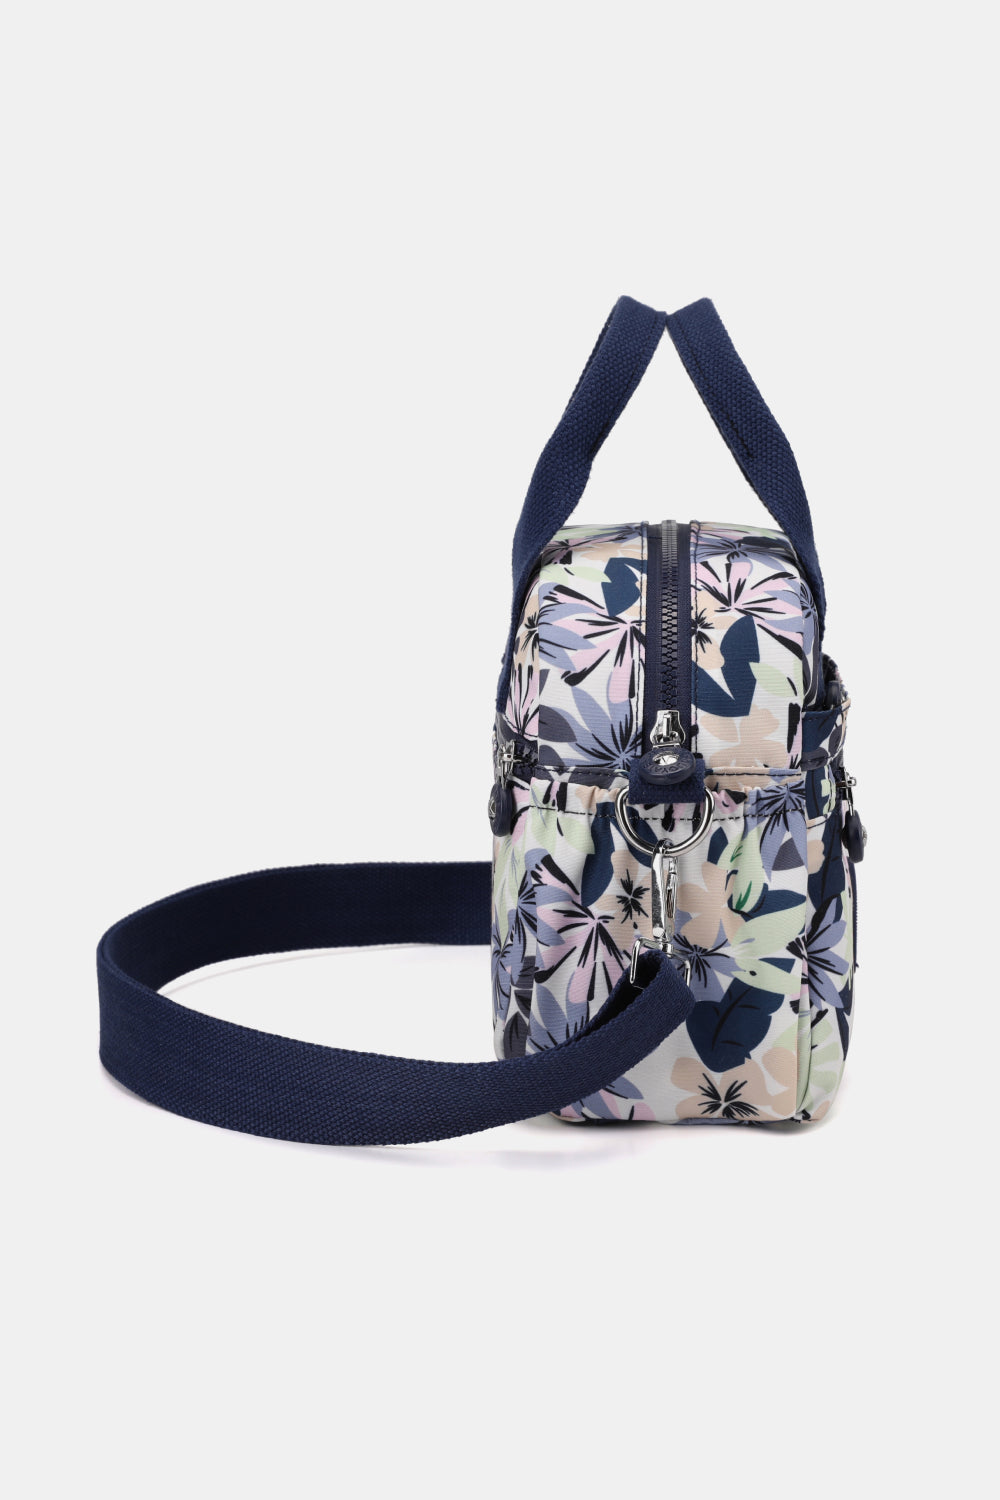 PREORDER- Floral Nylon Handbag